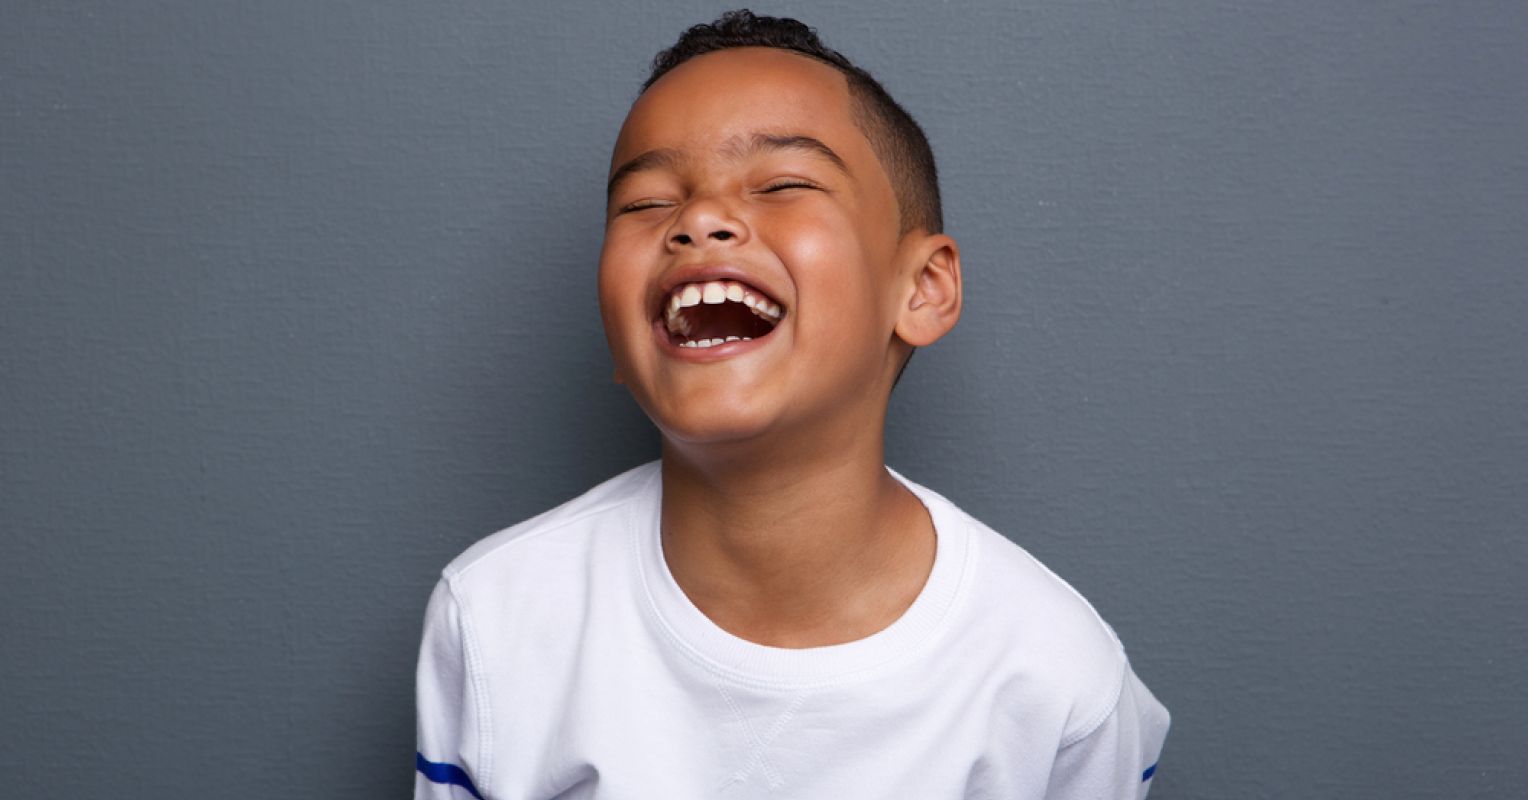 12دلیل مهم برای خندیدن در زندگی 